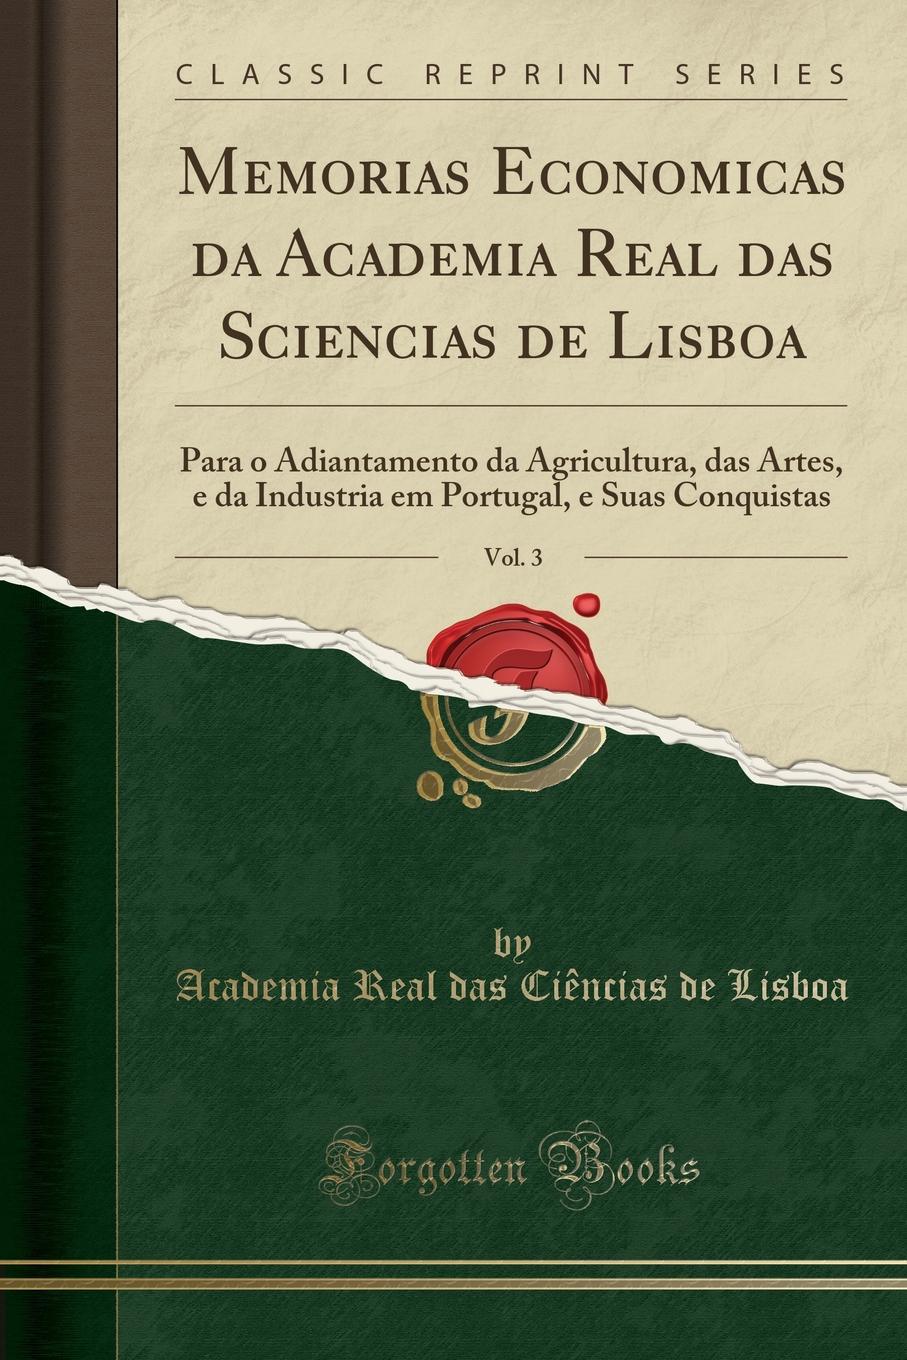 фото Memorias Economicas da Academia Real das Sciencias de Lisboa, Vol. 3. Para o Adiantamento da Agricultura, das Artes, e da Industria em Portugal, e Suas Conquistas (Classic Reprint)